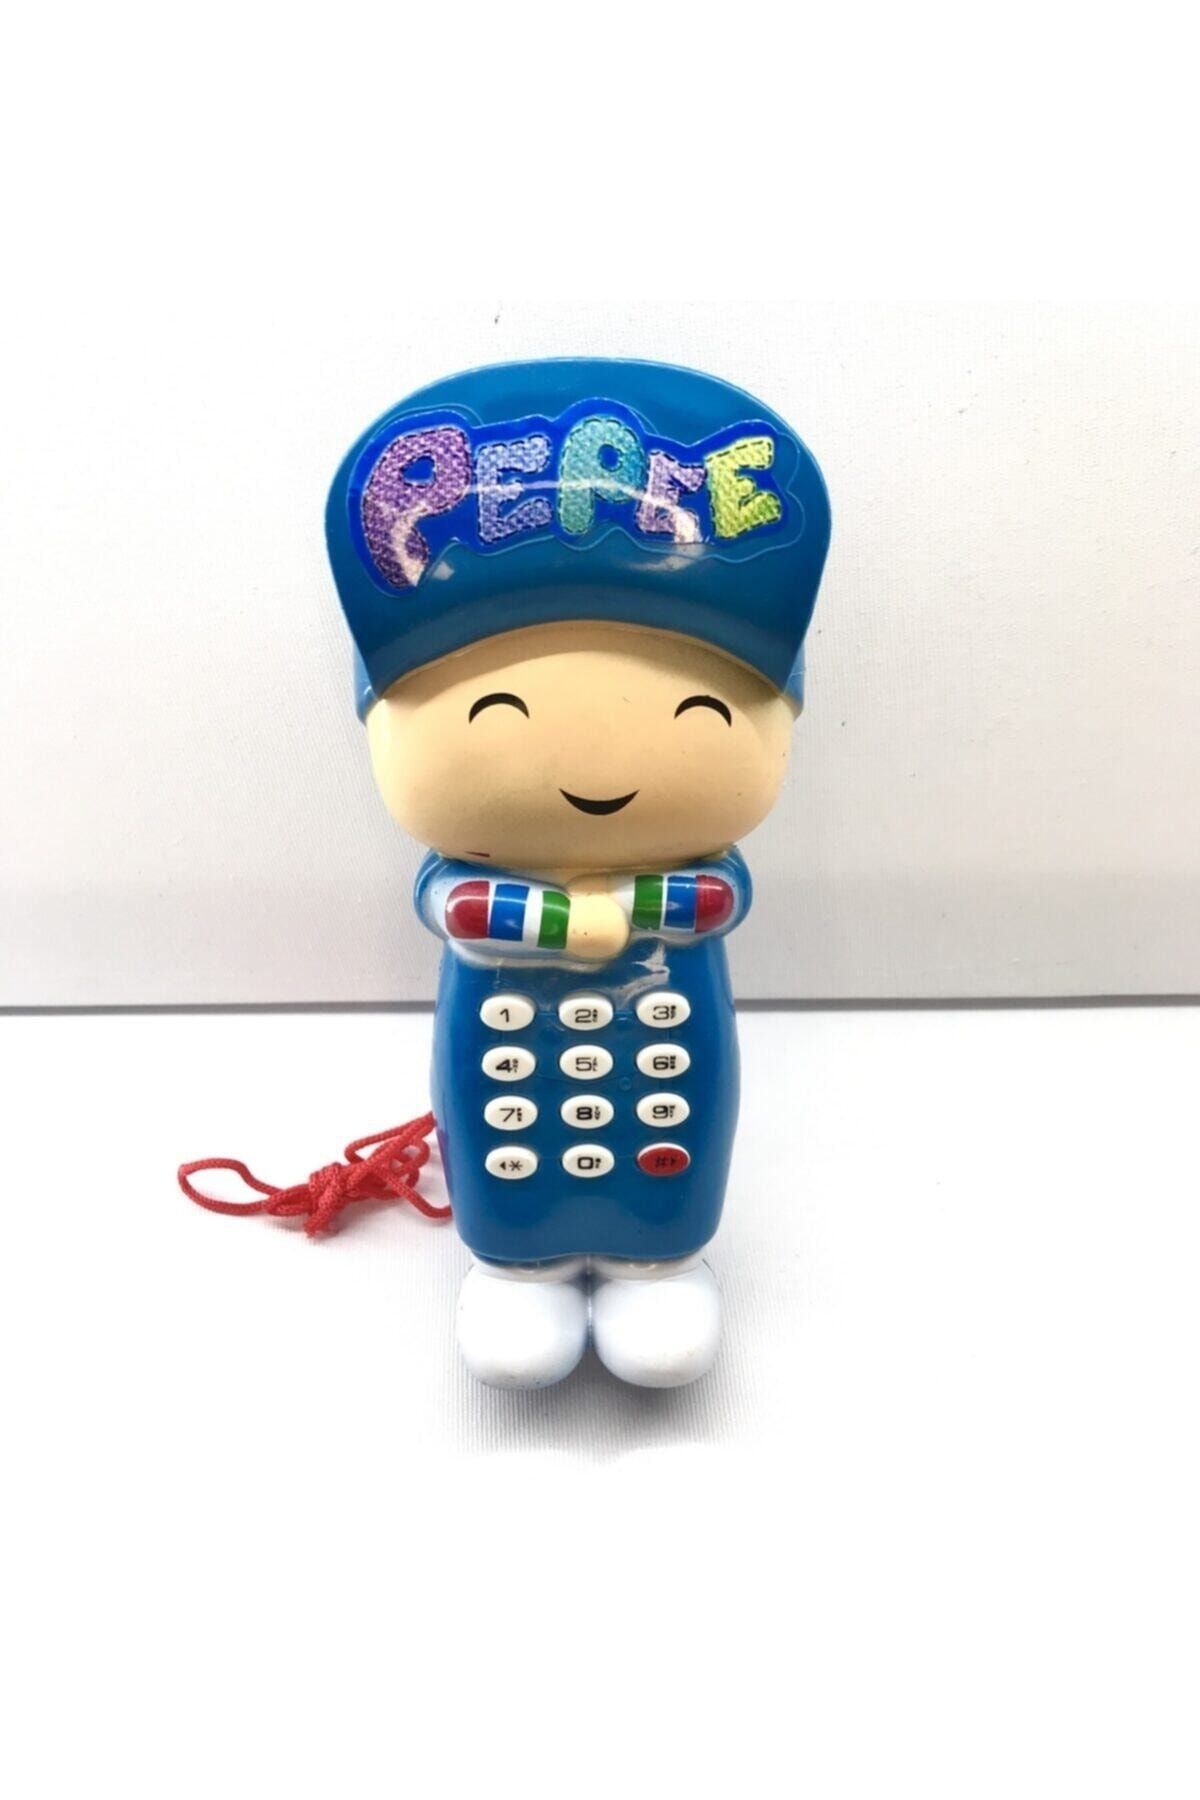 gülemzik Pepe Telefon Orjinal Pepe Şarkılı Yanında Pil Ile Gönderilecektir.